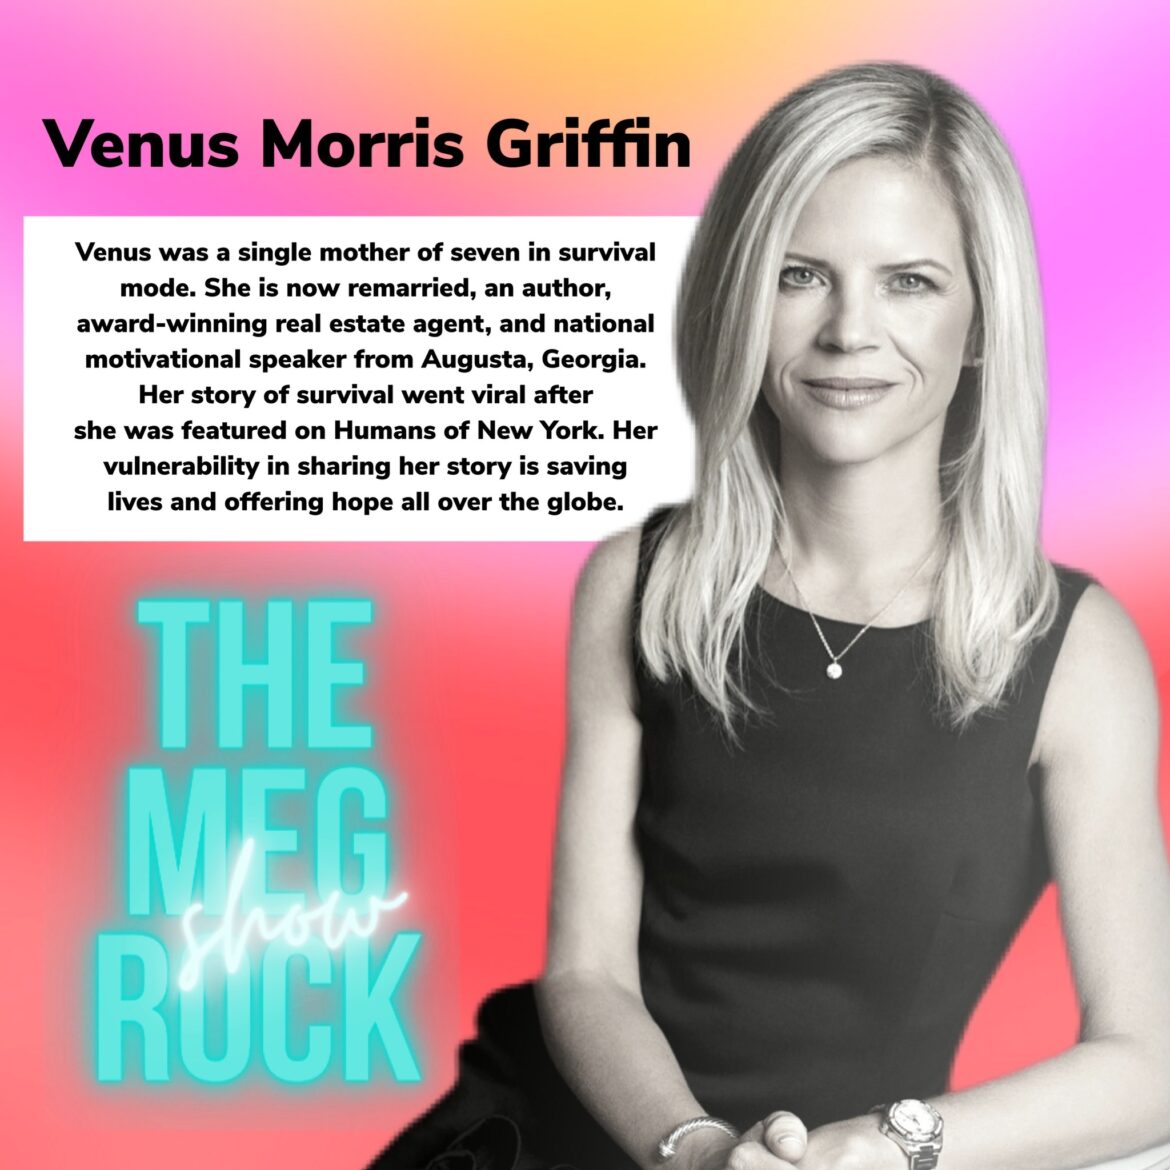 Venus Morris Griffin